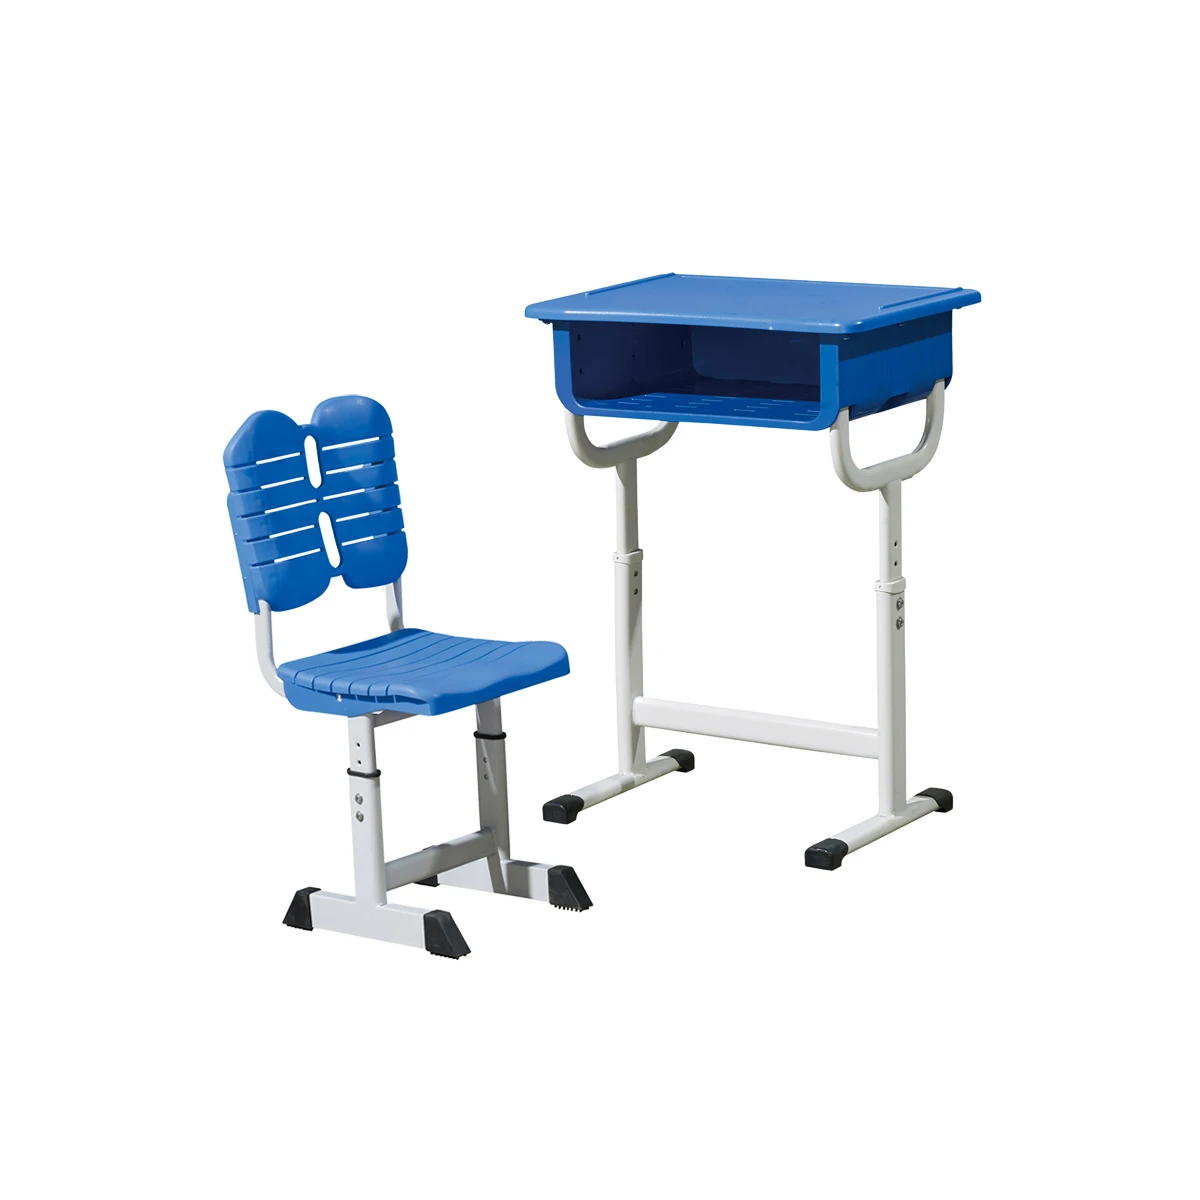 
 Мебель для начальной школы для взрослых с регулируемой высотой, одиночный стол и наборы стульев, доска для детского сада, МДФ, дерево или пластик  